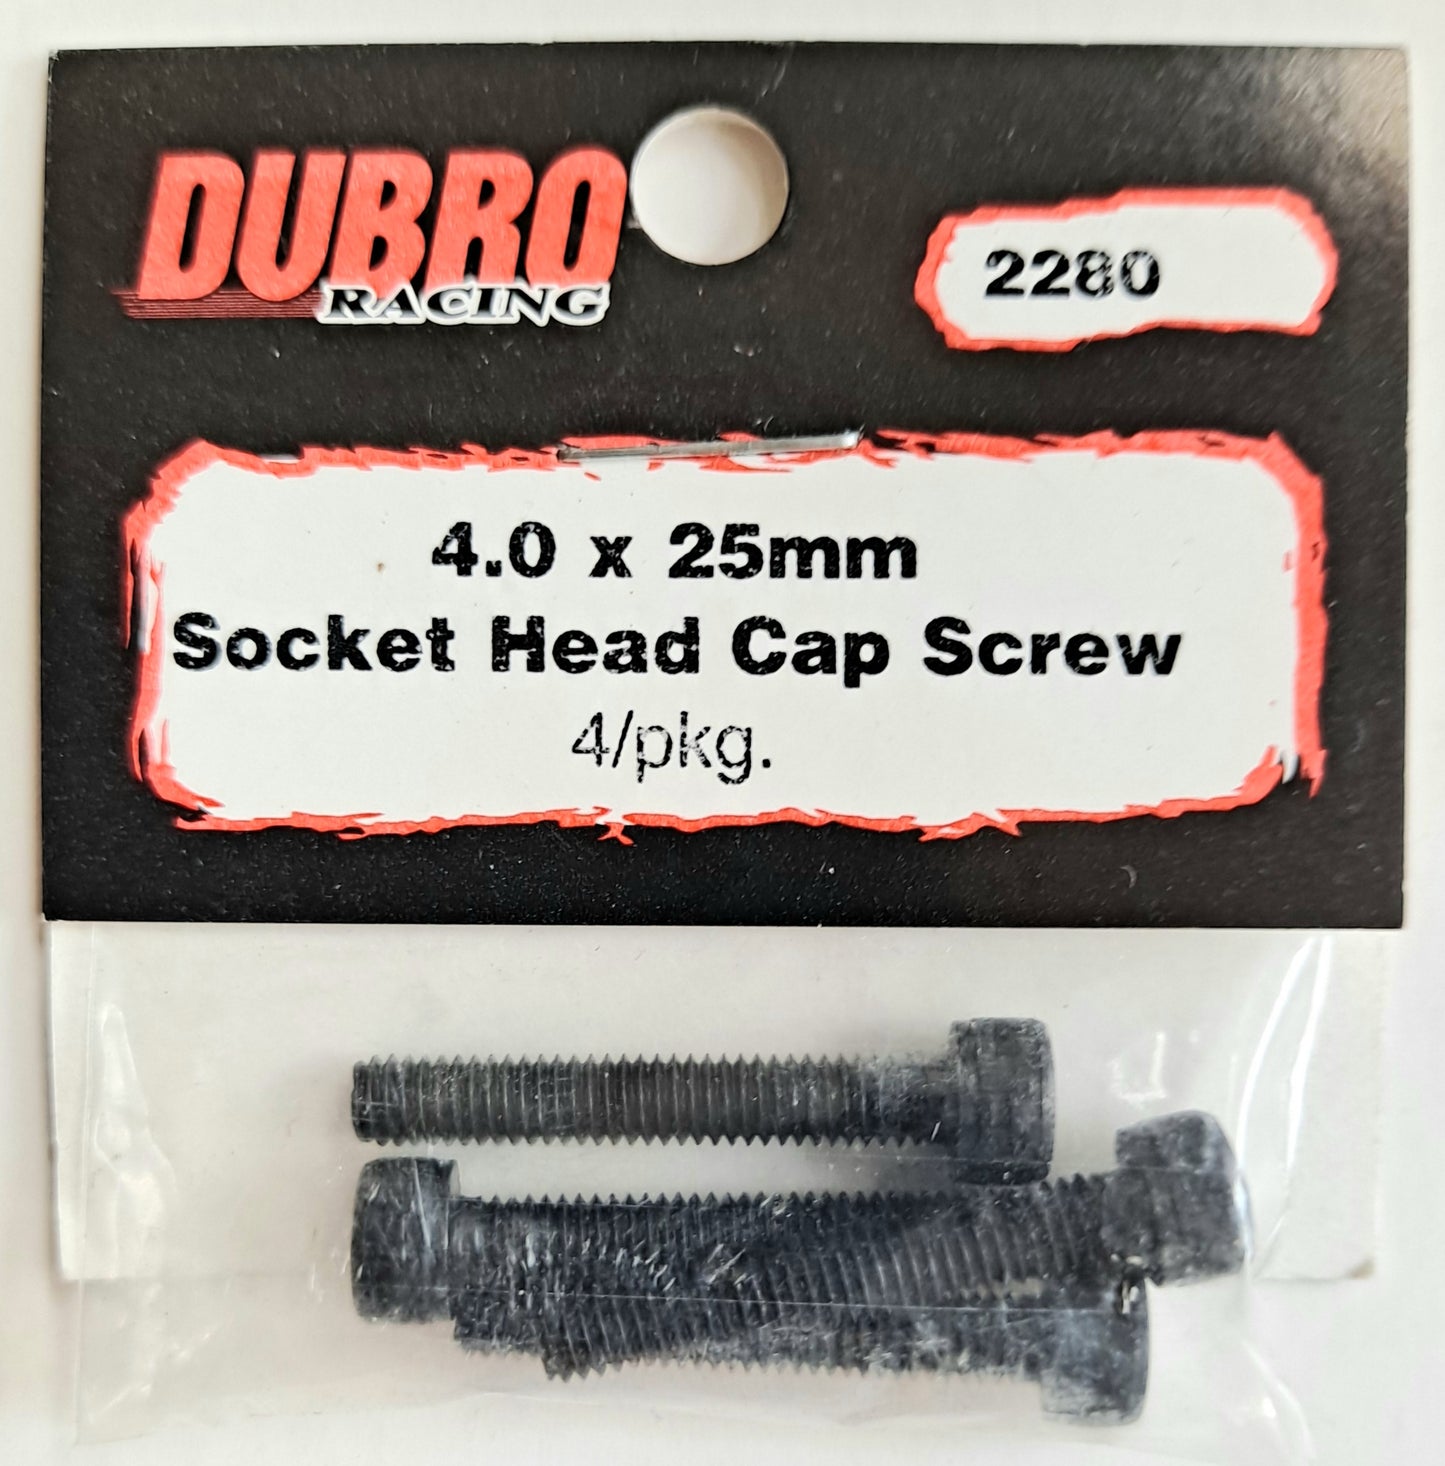 Du-Bro 4.0 x 25mm Socket Head Cap Screw (4 pcs) #2280